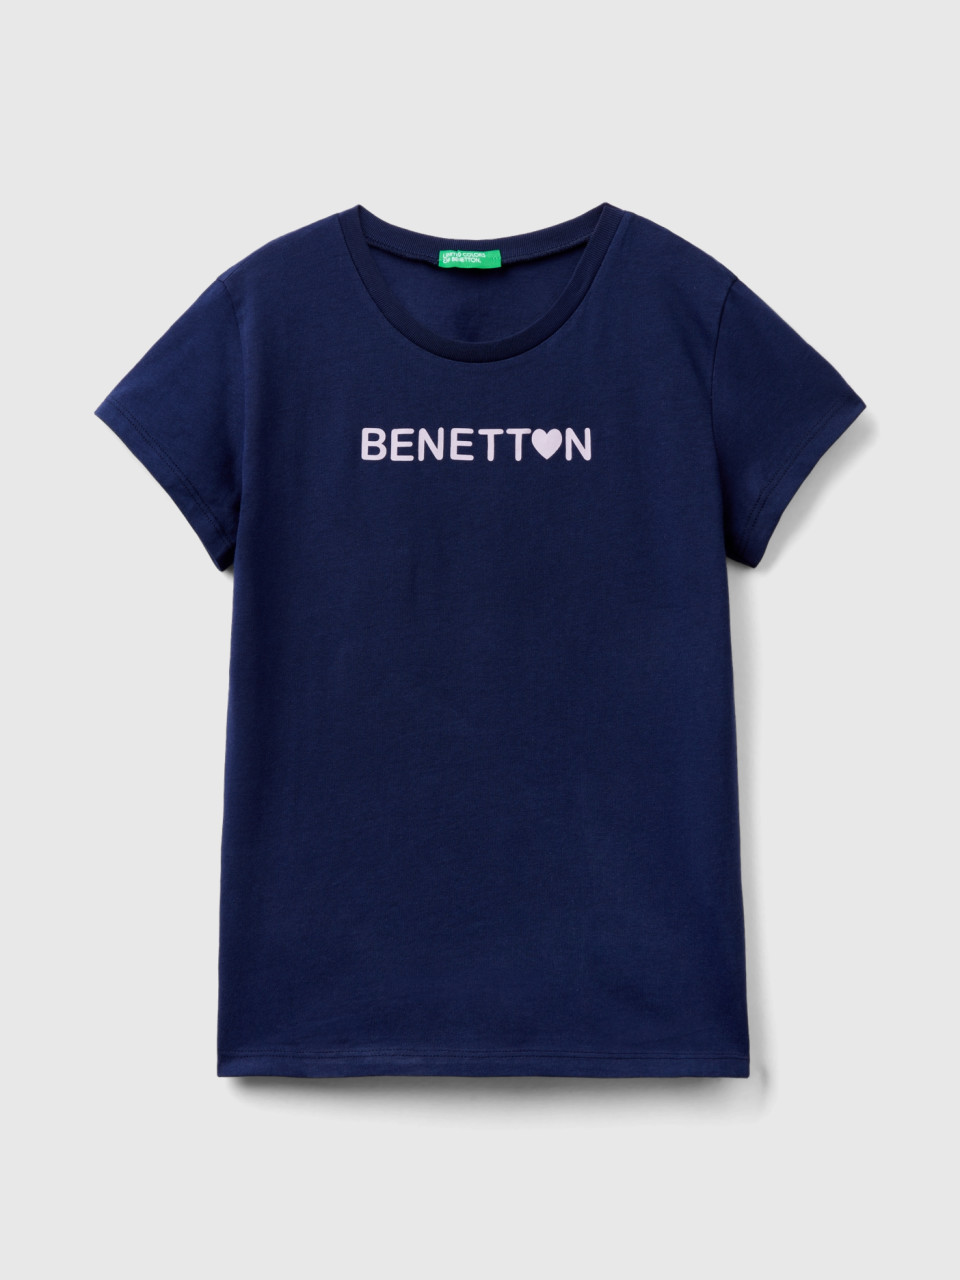 Benetton, Camiseta De 100 % Algodón Con Logotipo, Azul Oscuro, Niños